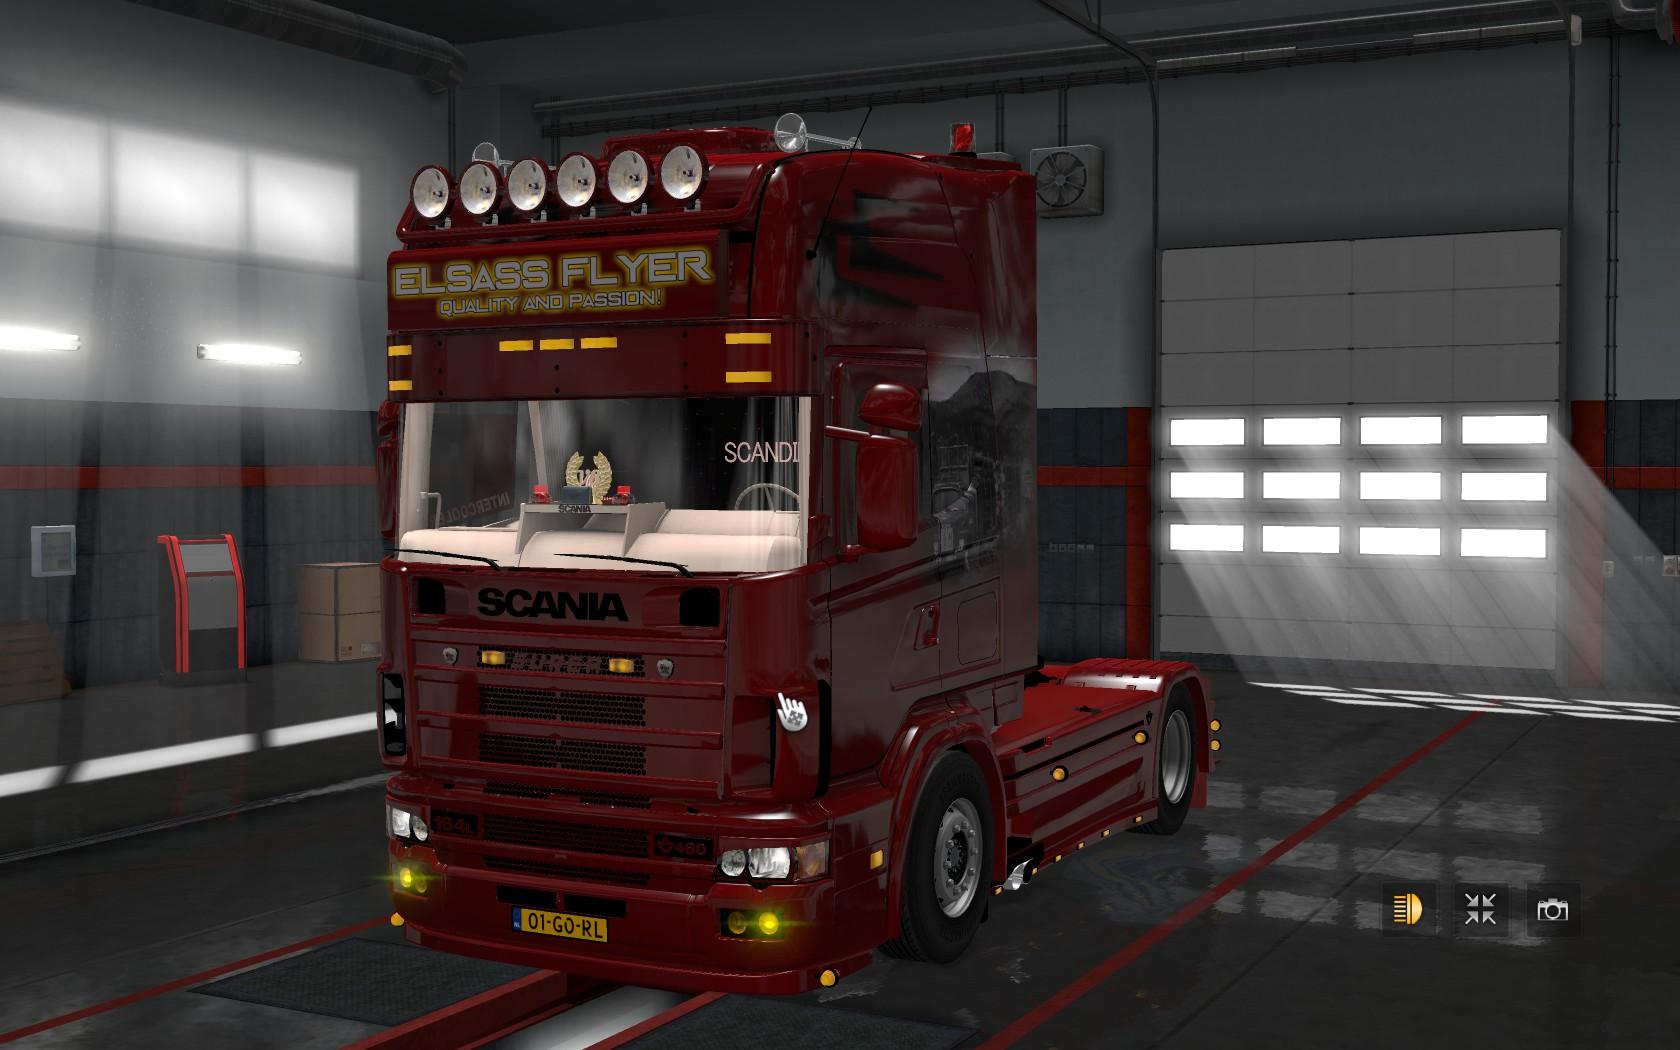 euro truck simulator 2 zip download